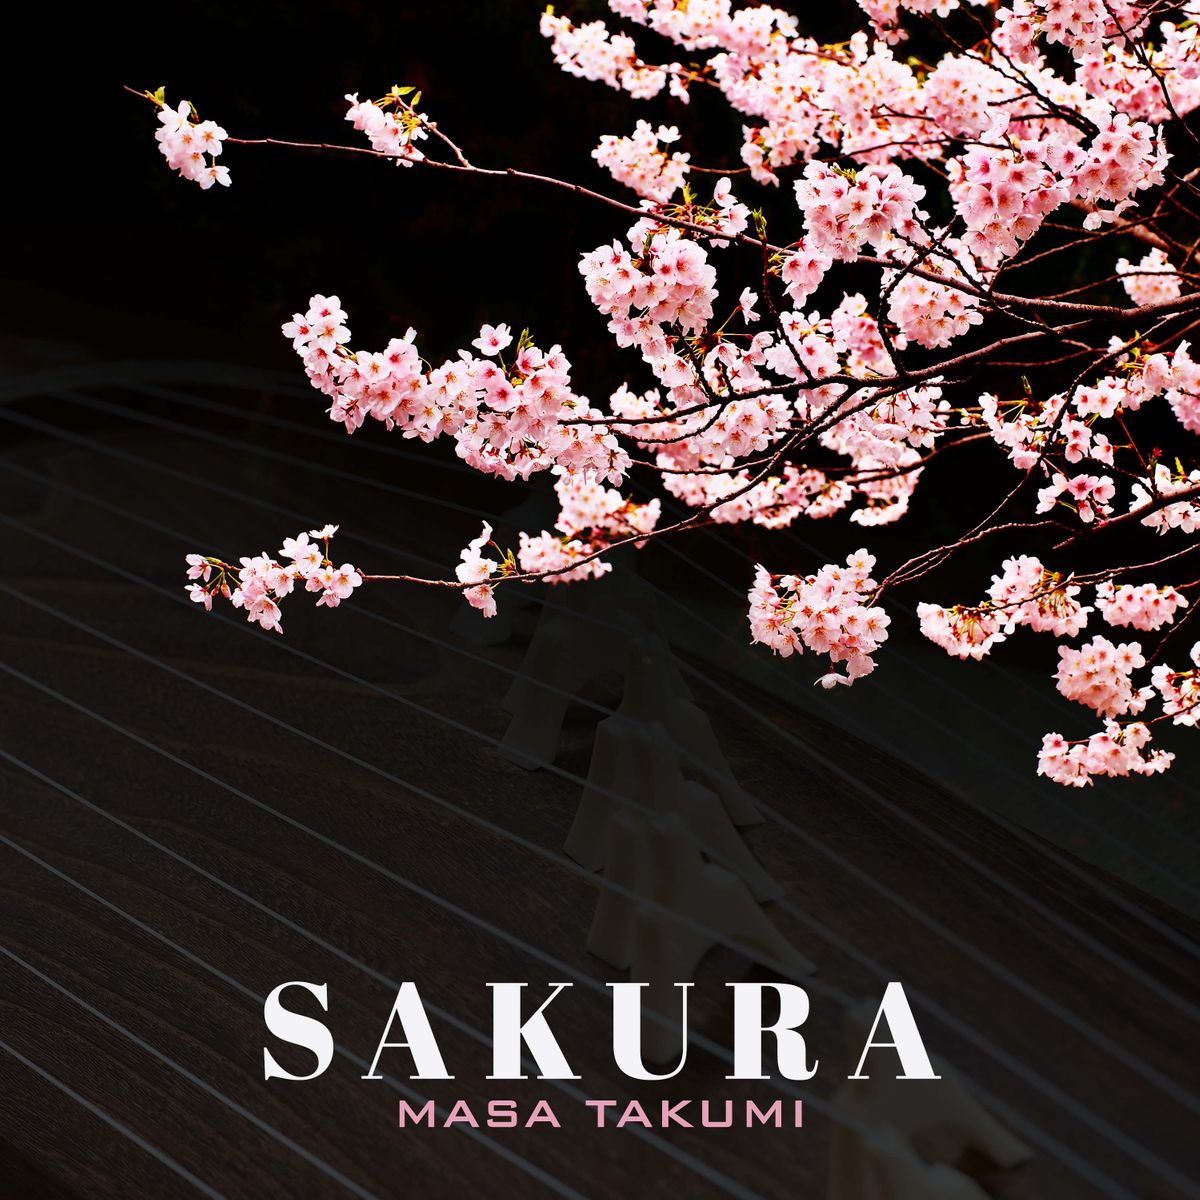 ノミネート作品『Sakura』